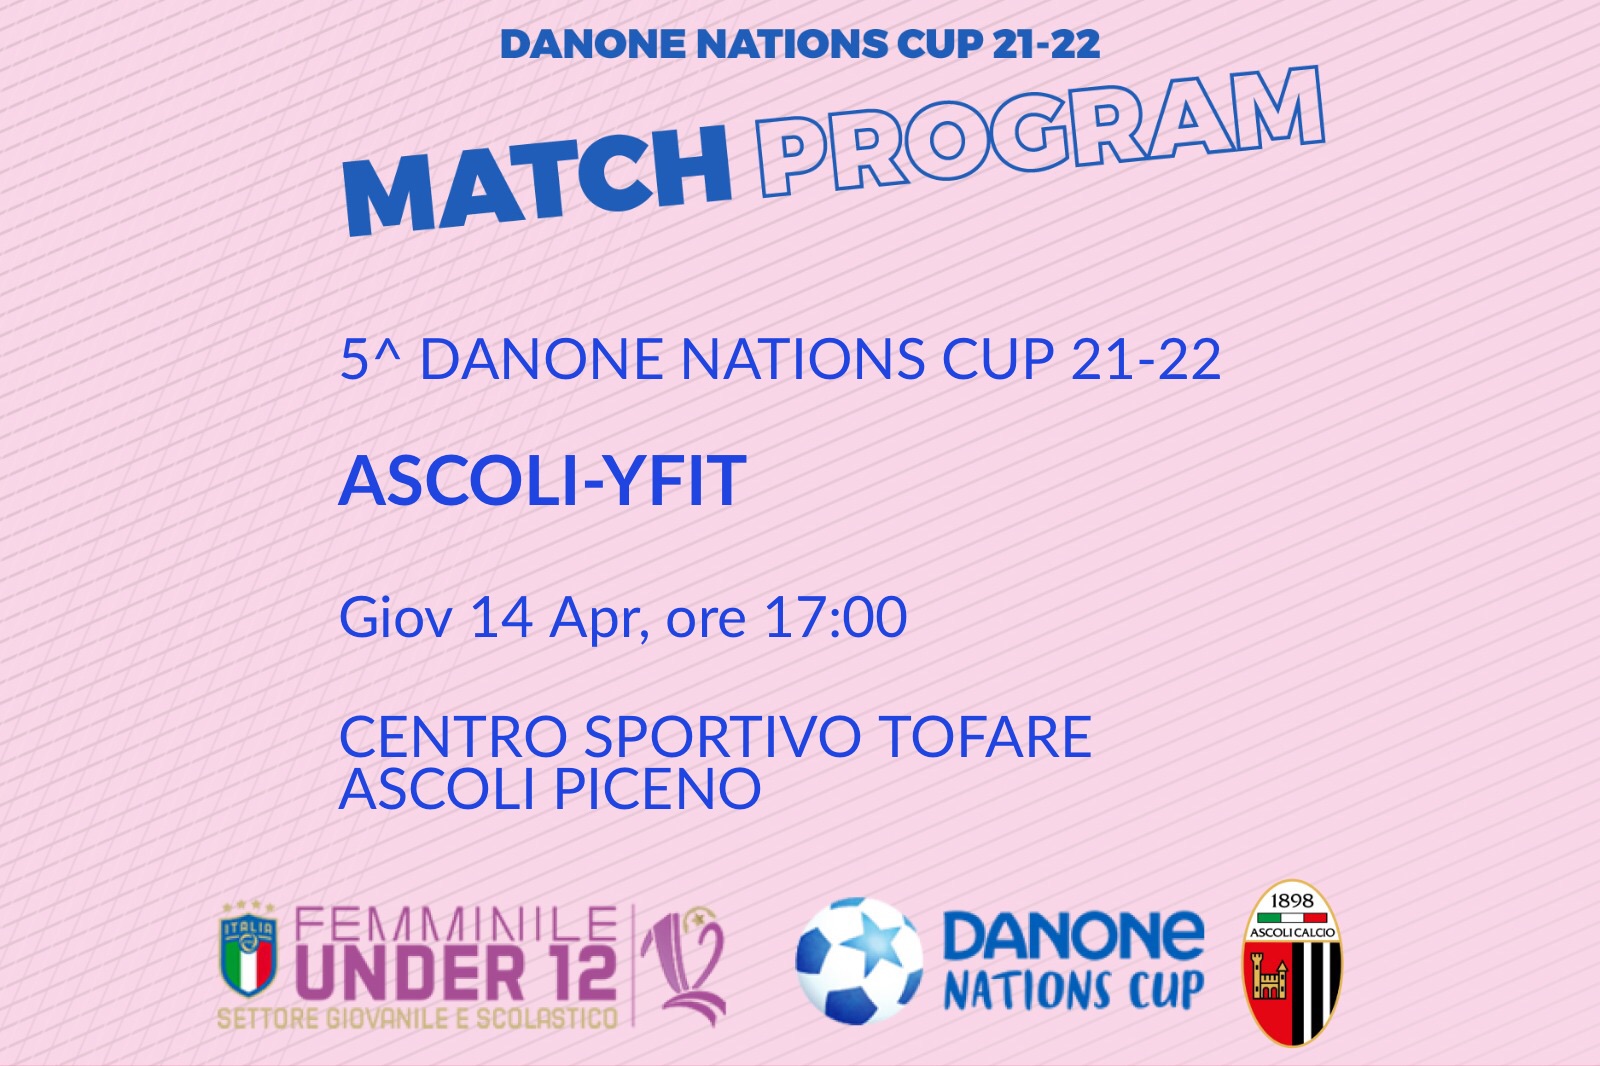 DANONE NATIONS CUP | IL PROGRAMMA DELLA 5^ GIORNATA